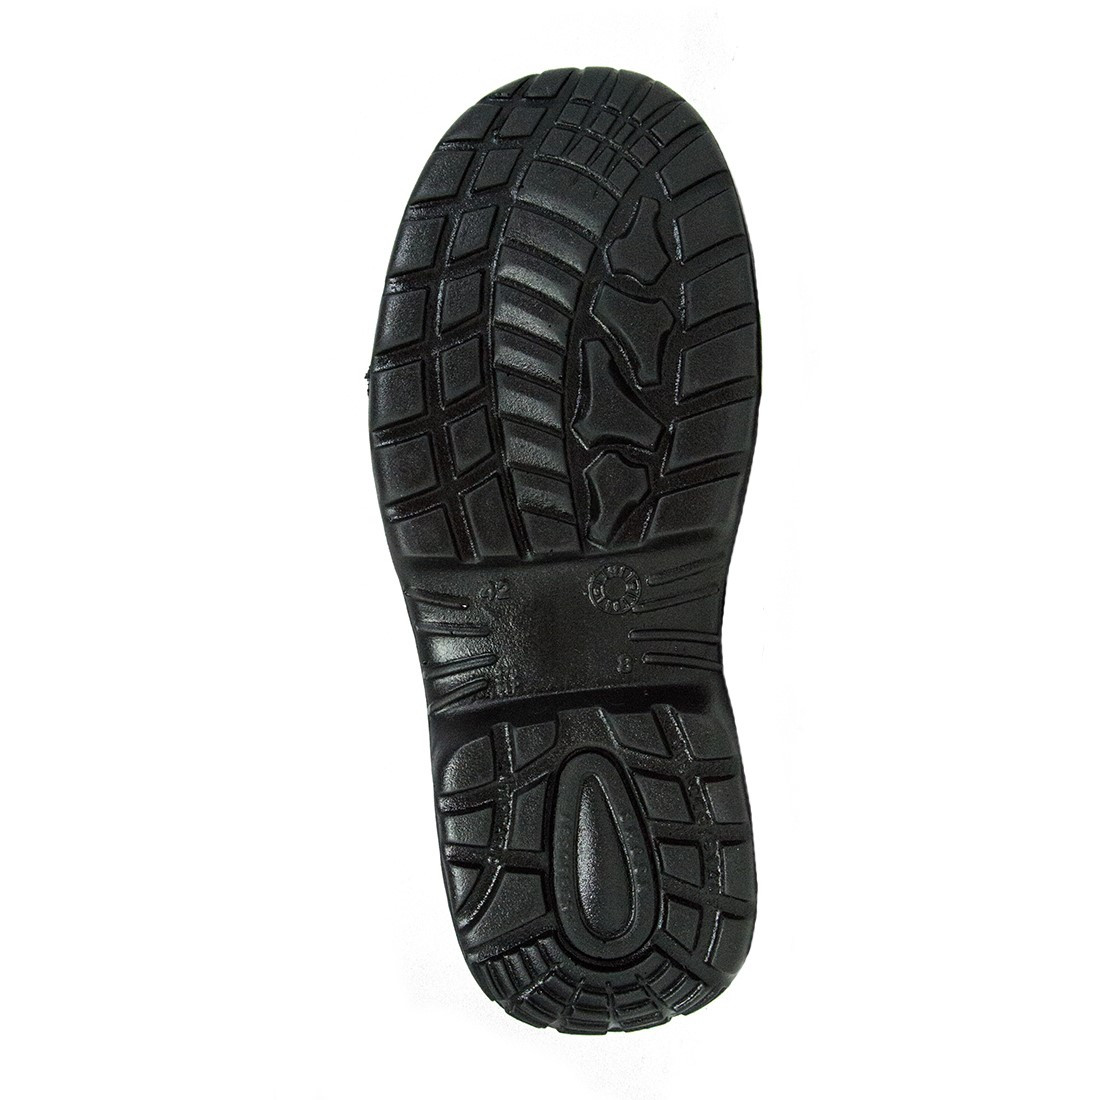 Garribaldi Shoe S1P SRC - Les chaussures de protection